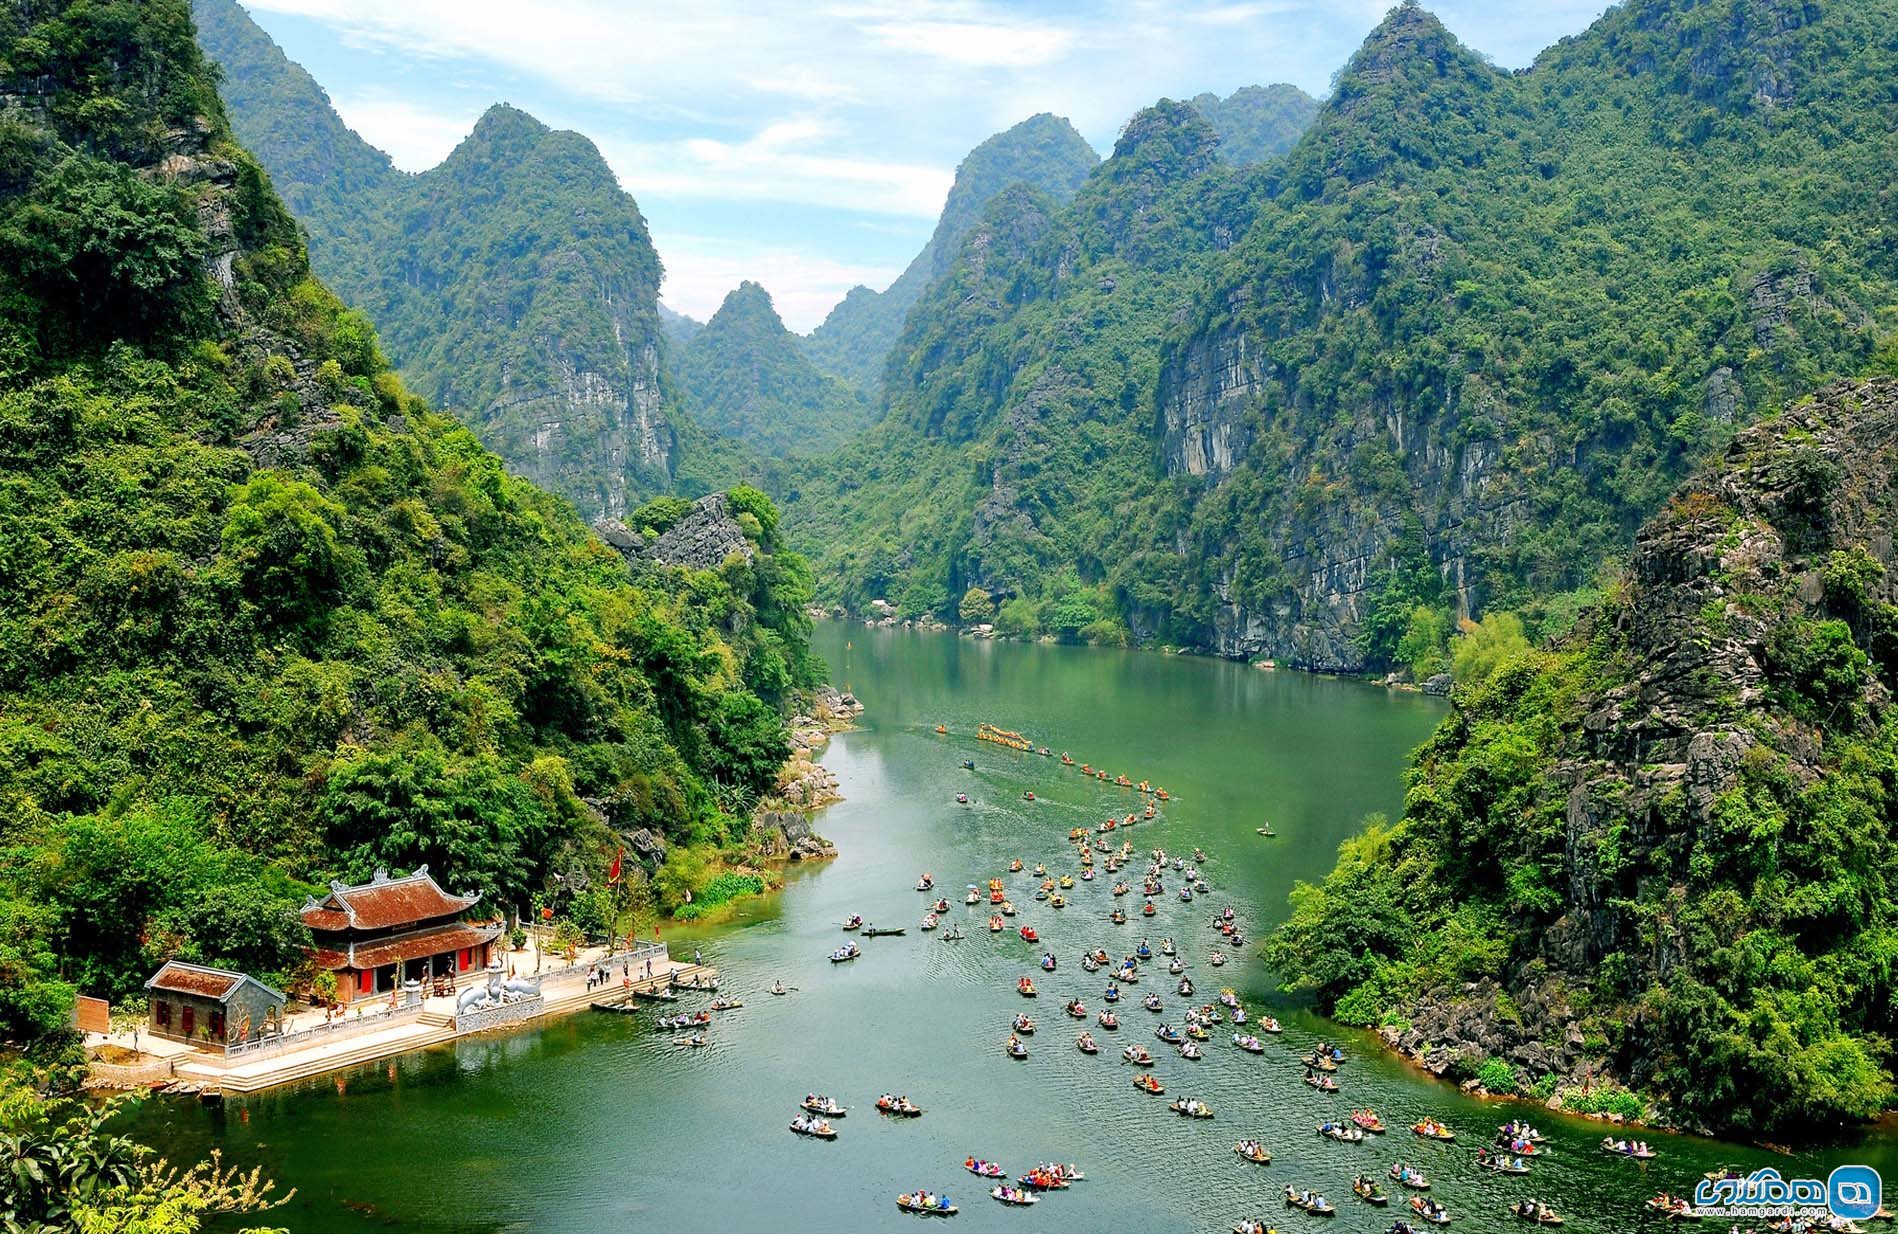 مجموعه مناظر طبیعی ترانگ آن Trang An در ویتنام